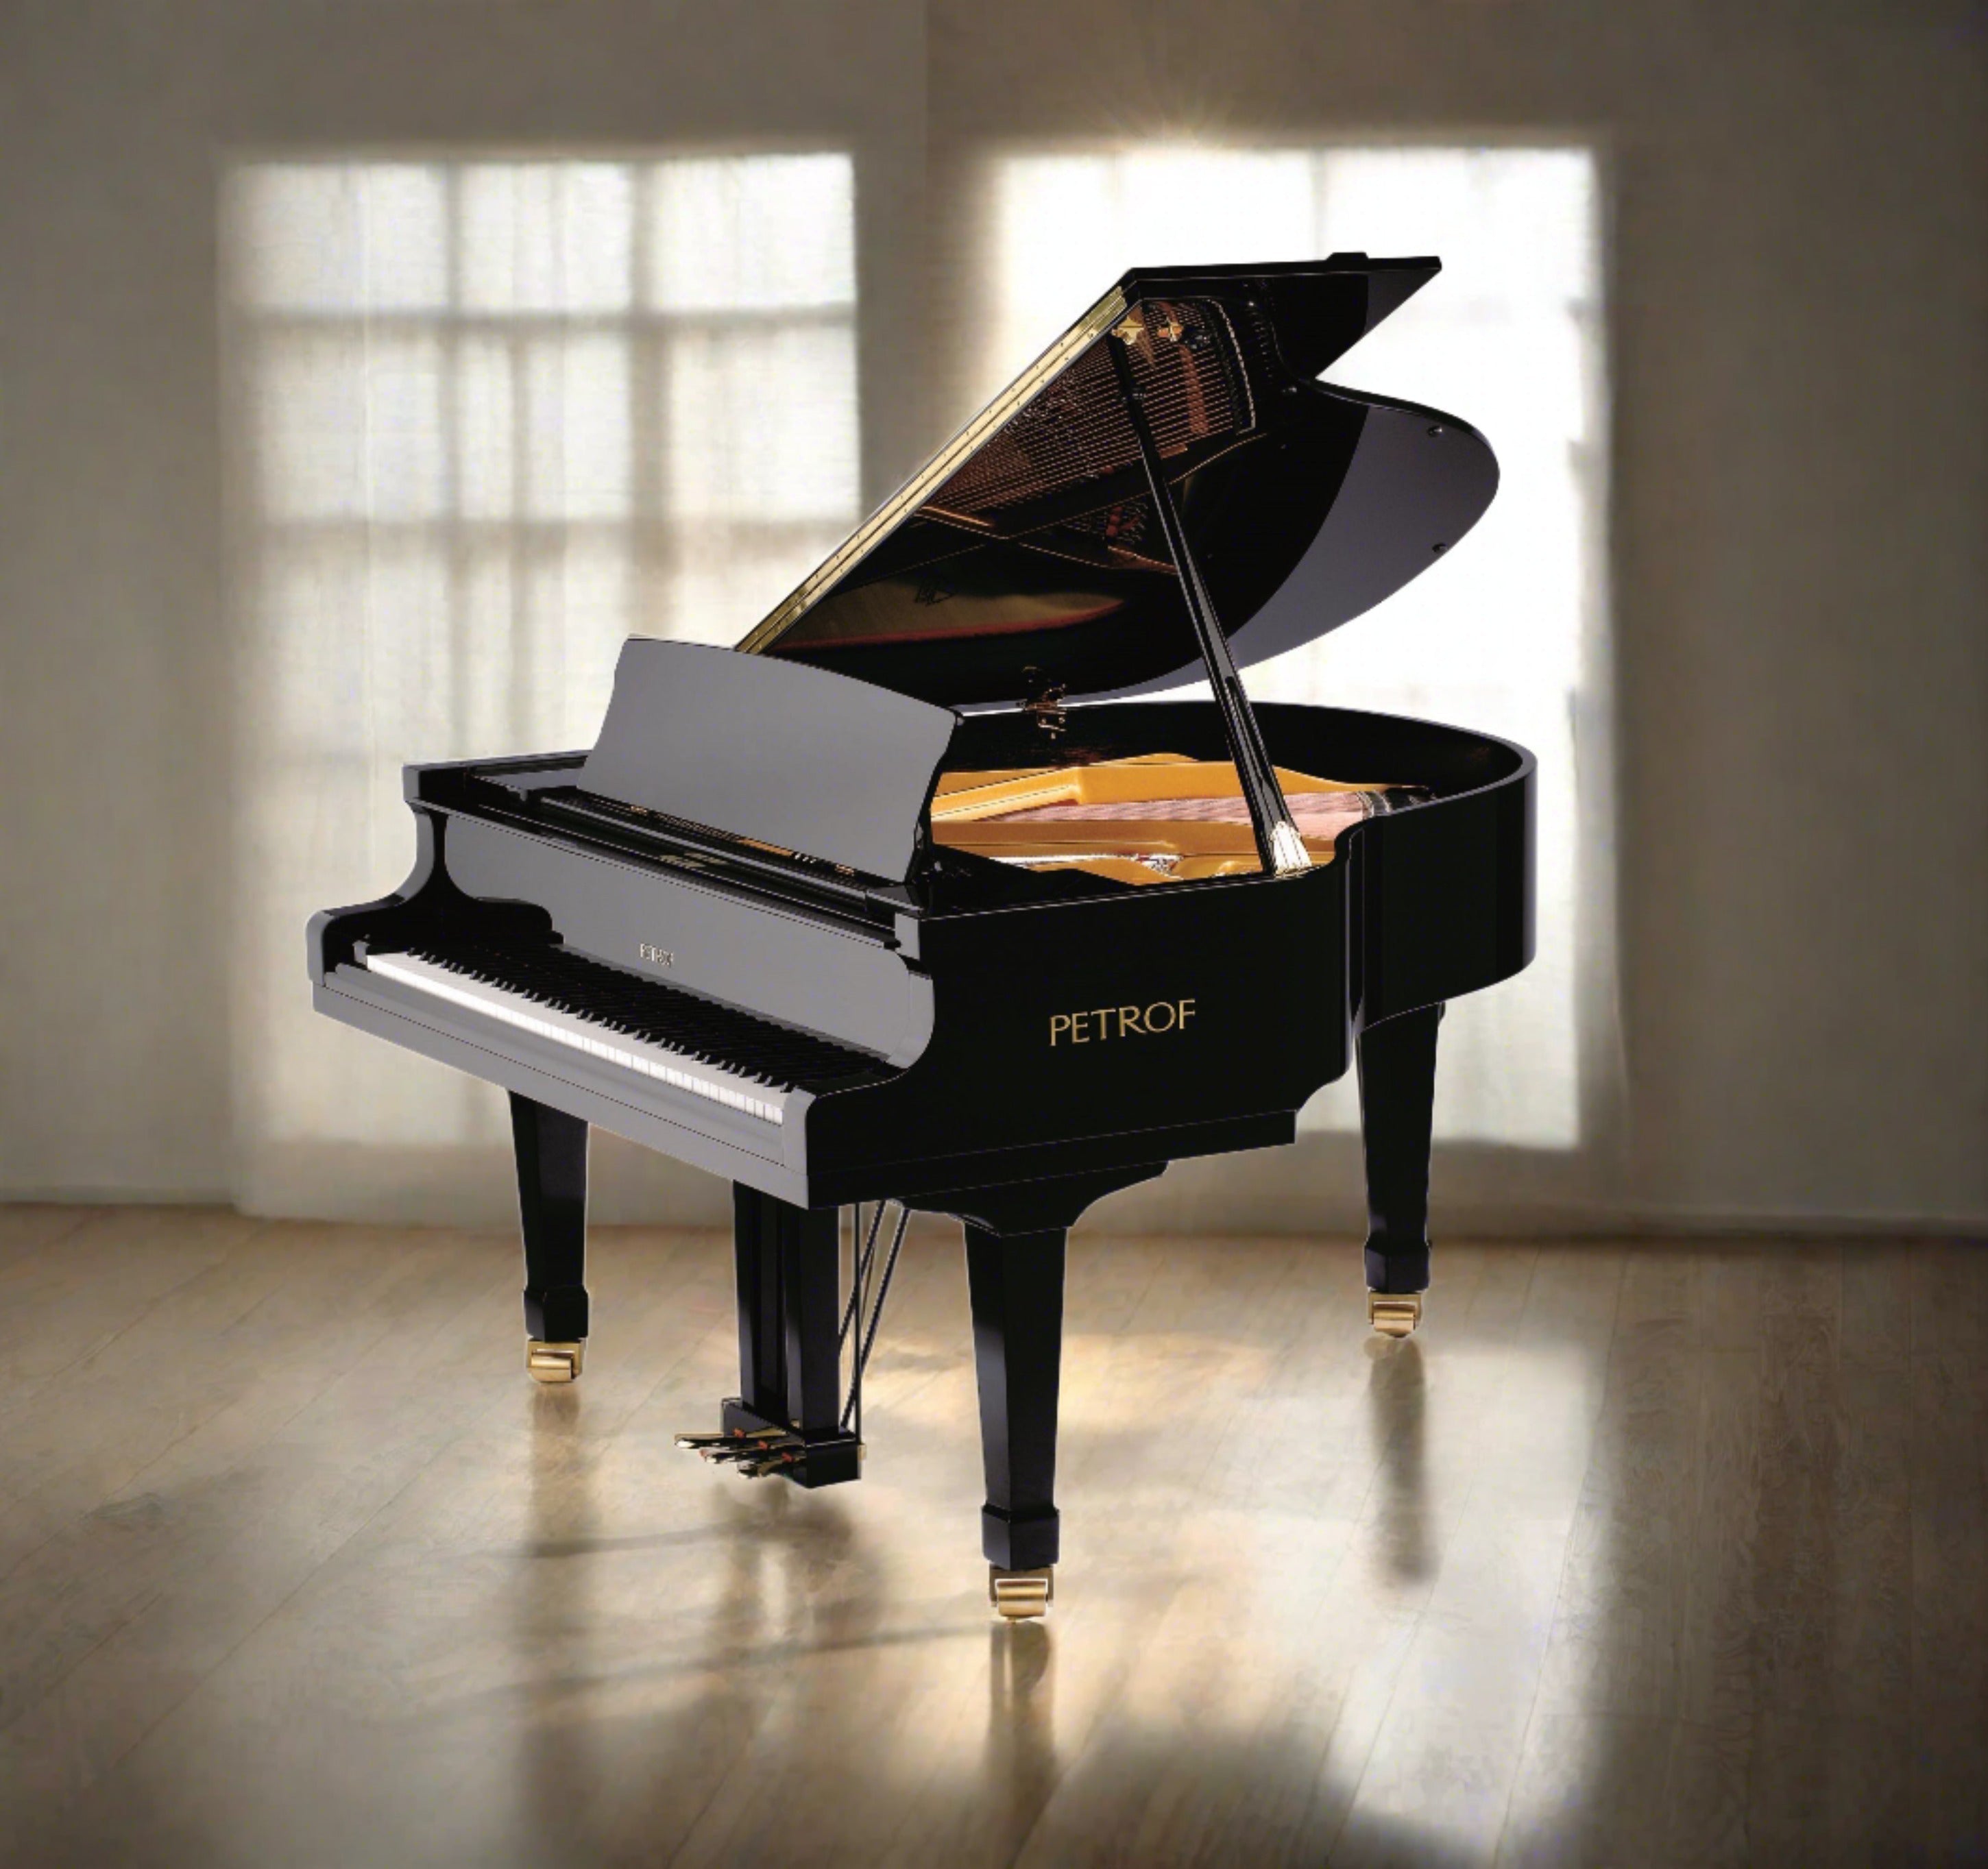 Petrof Bora P159 (5'2") Baby Grand Piano in Ebony Polish